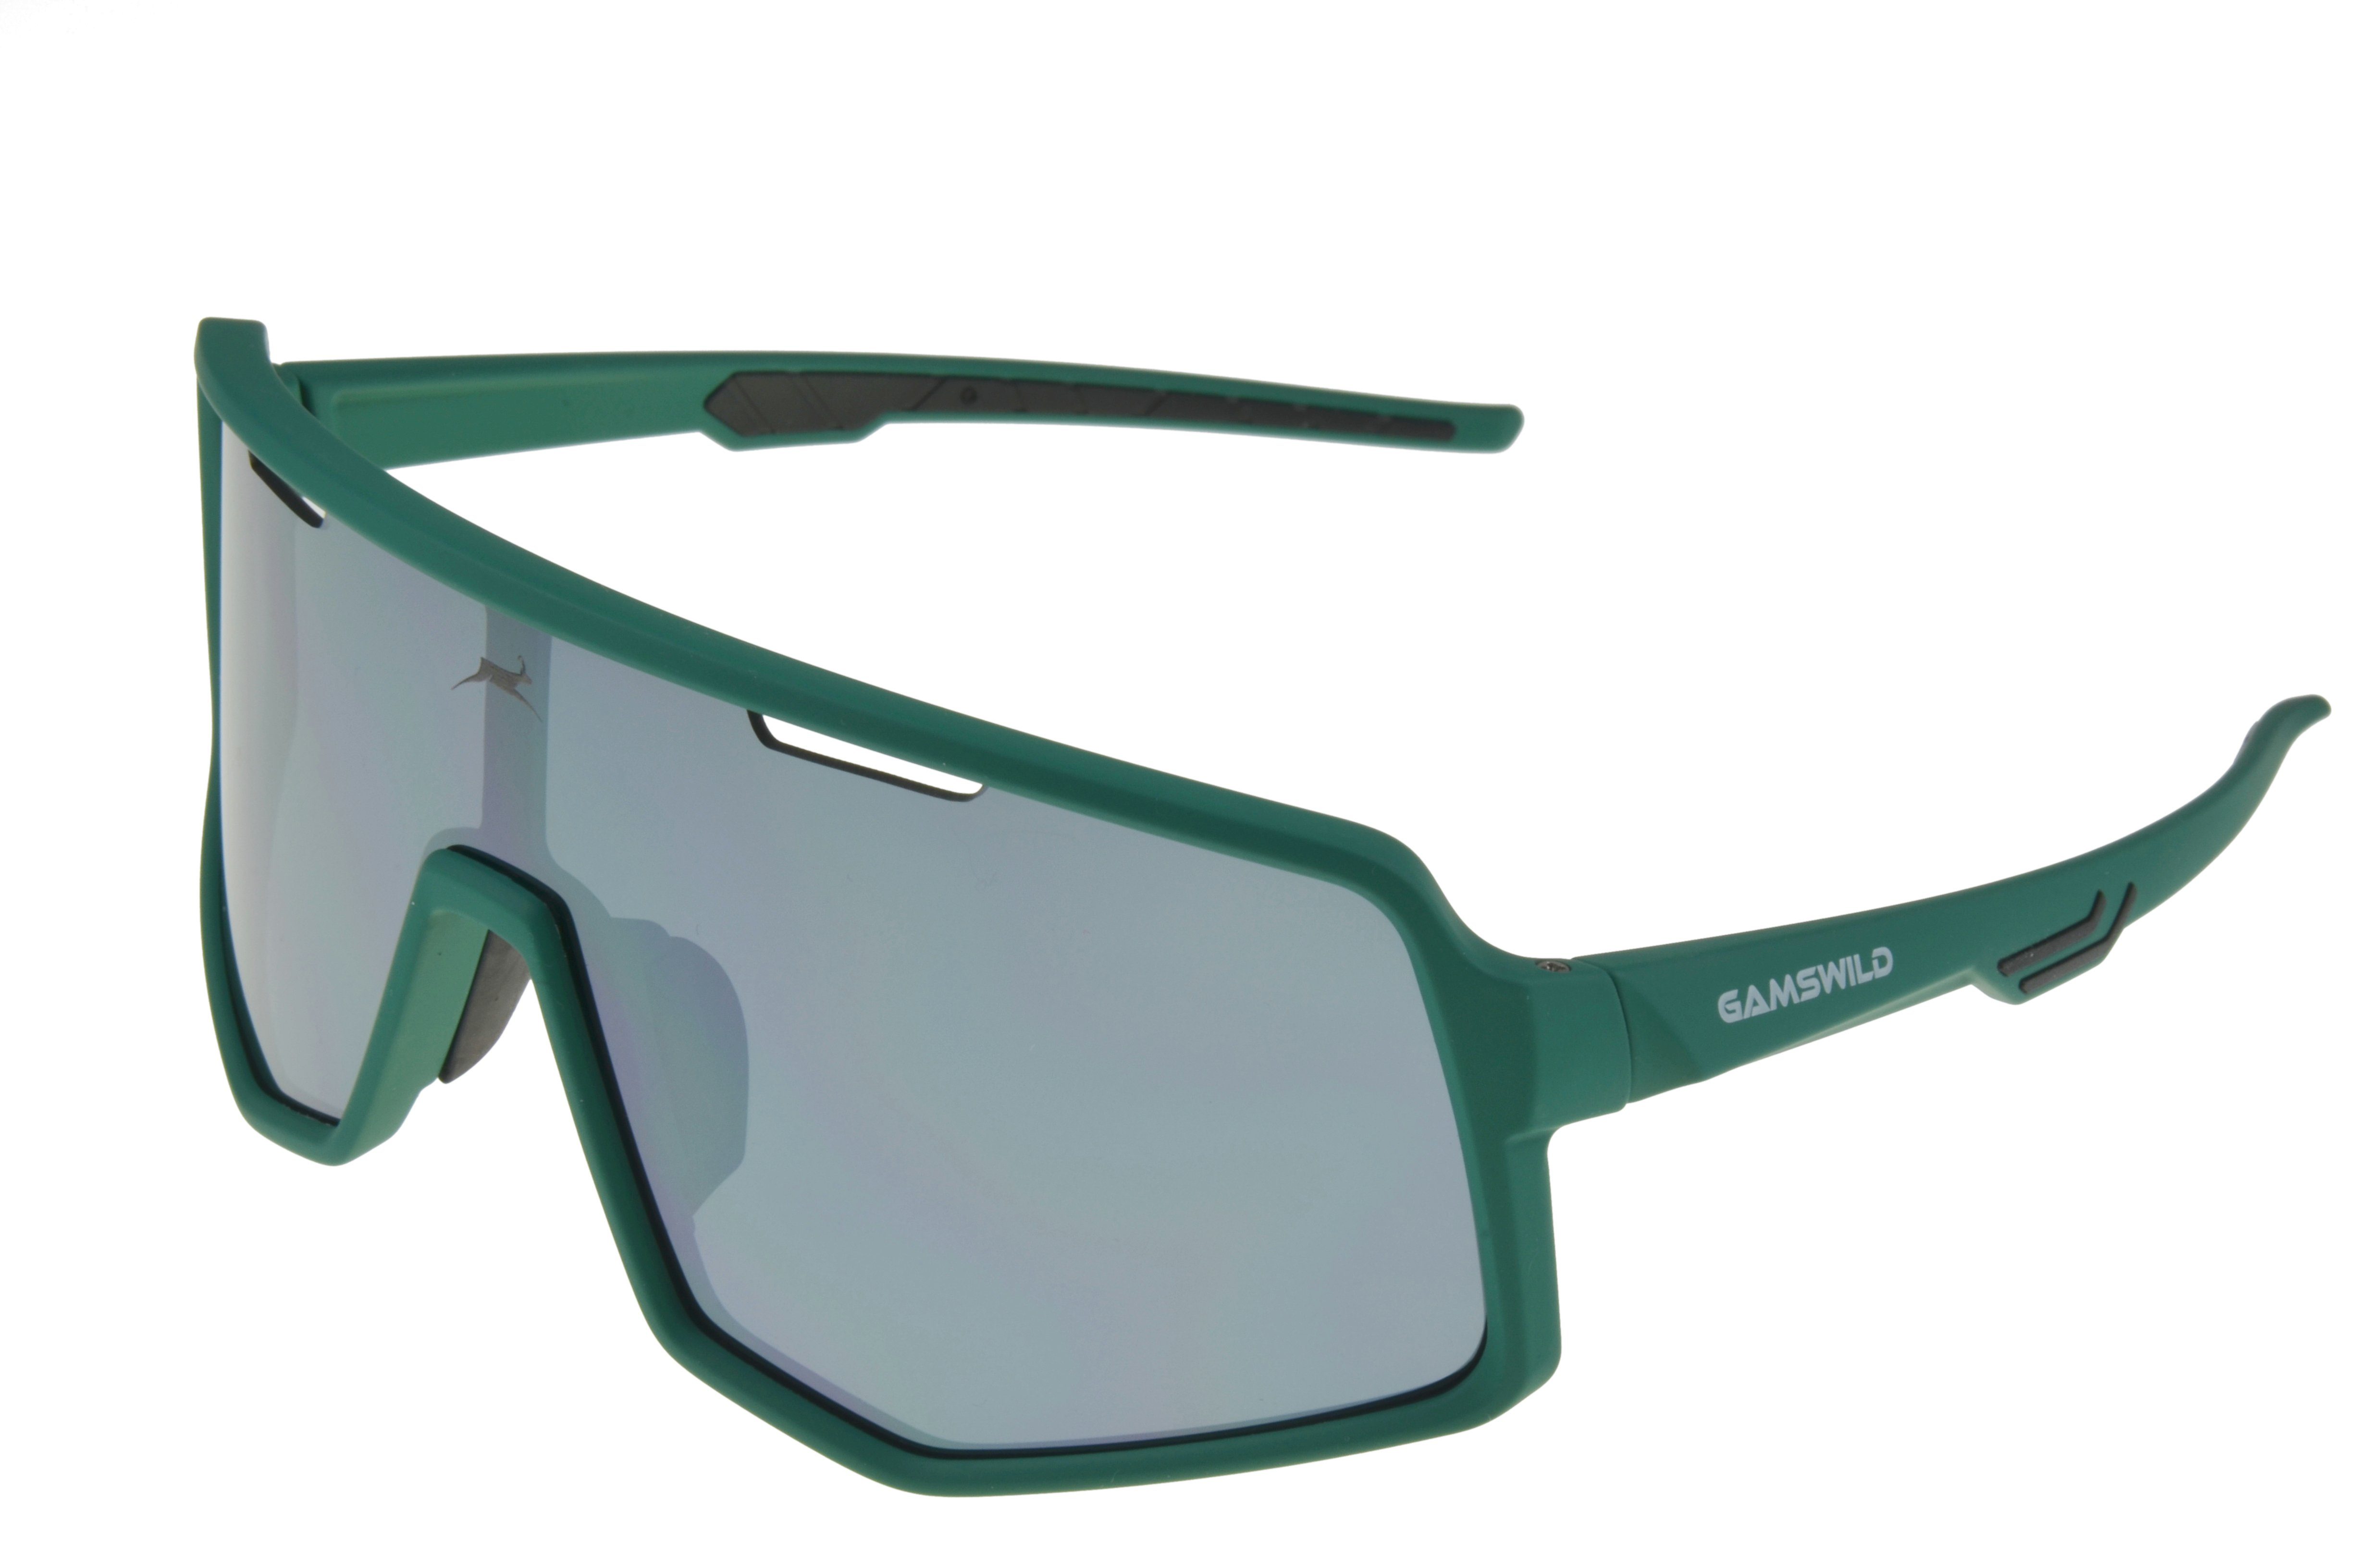 Gamswild Sonnenbrille WS4042 Sonnenbrille Fahrradbrille Skibrille Damen Herren Unisex TR90 Unisex, lila, schwarz-blau, schwarz-rot, grün mintgrün